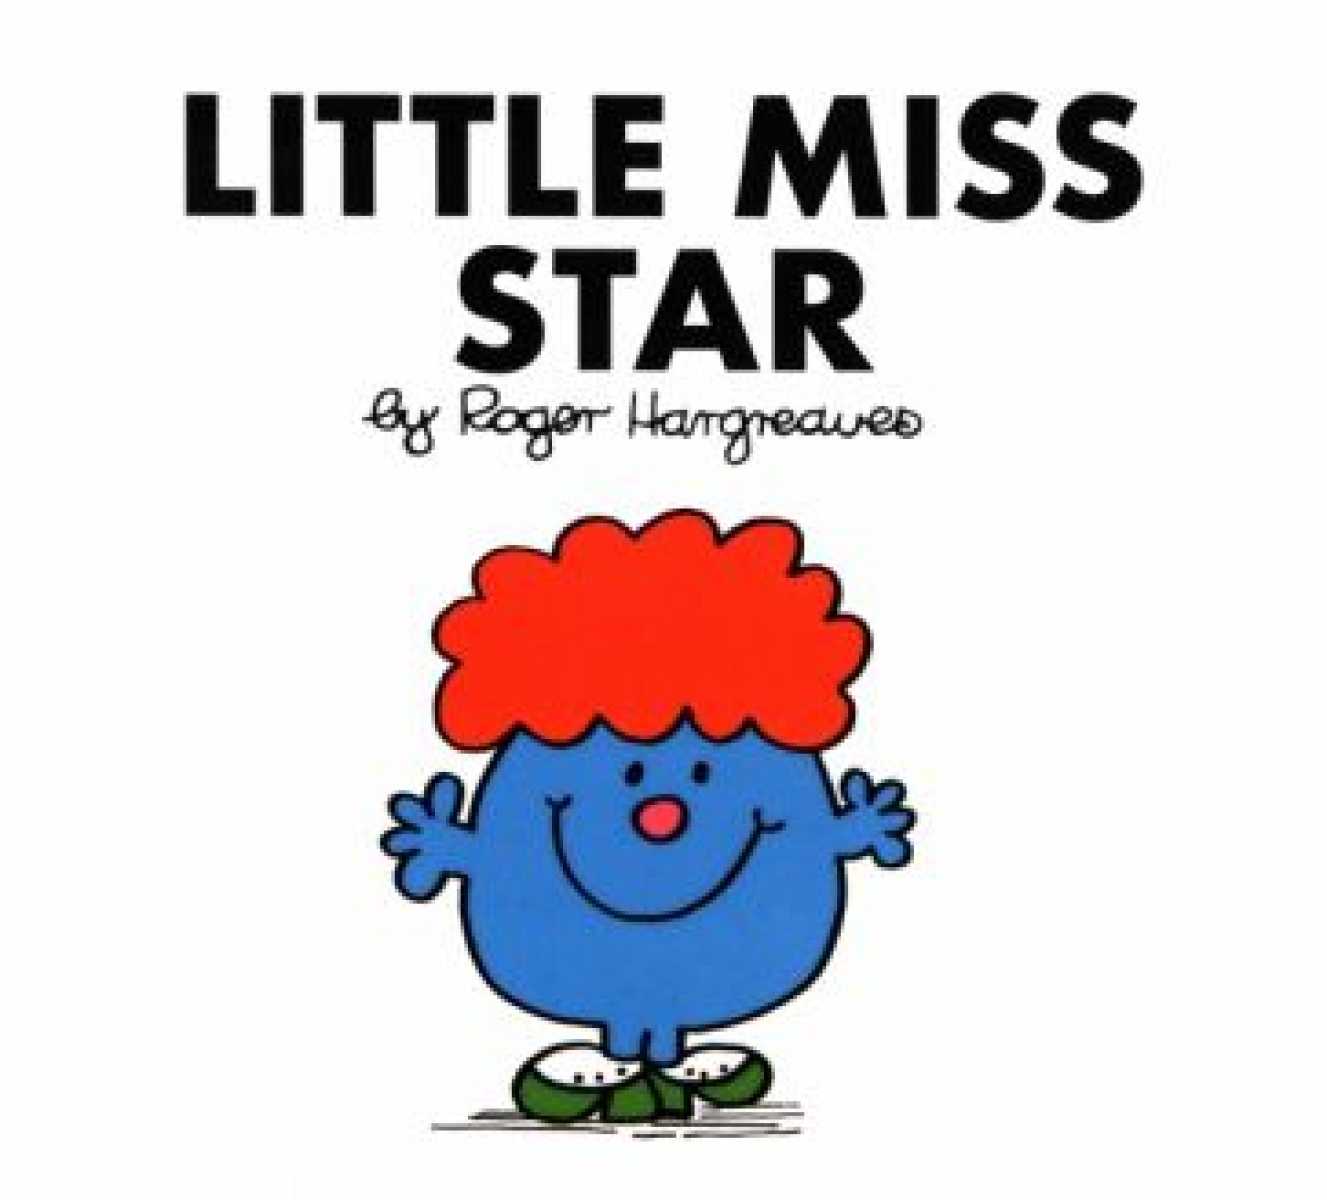 Hargreaves Roger Little Miss Star 